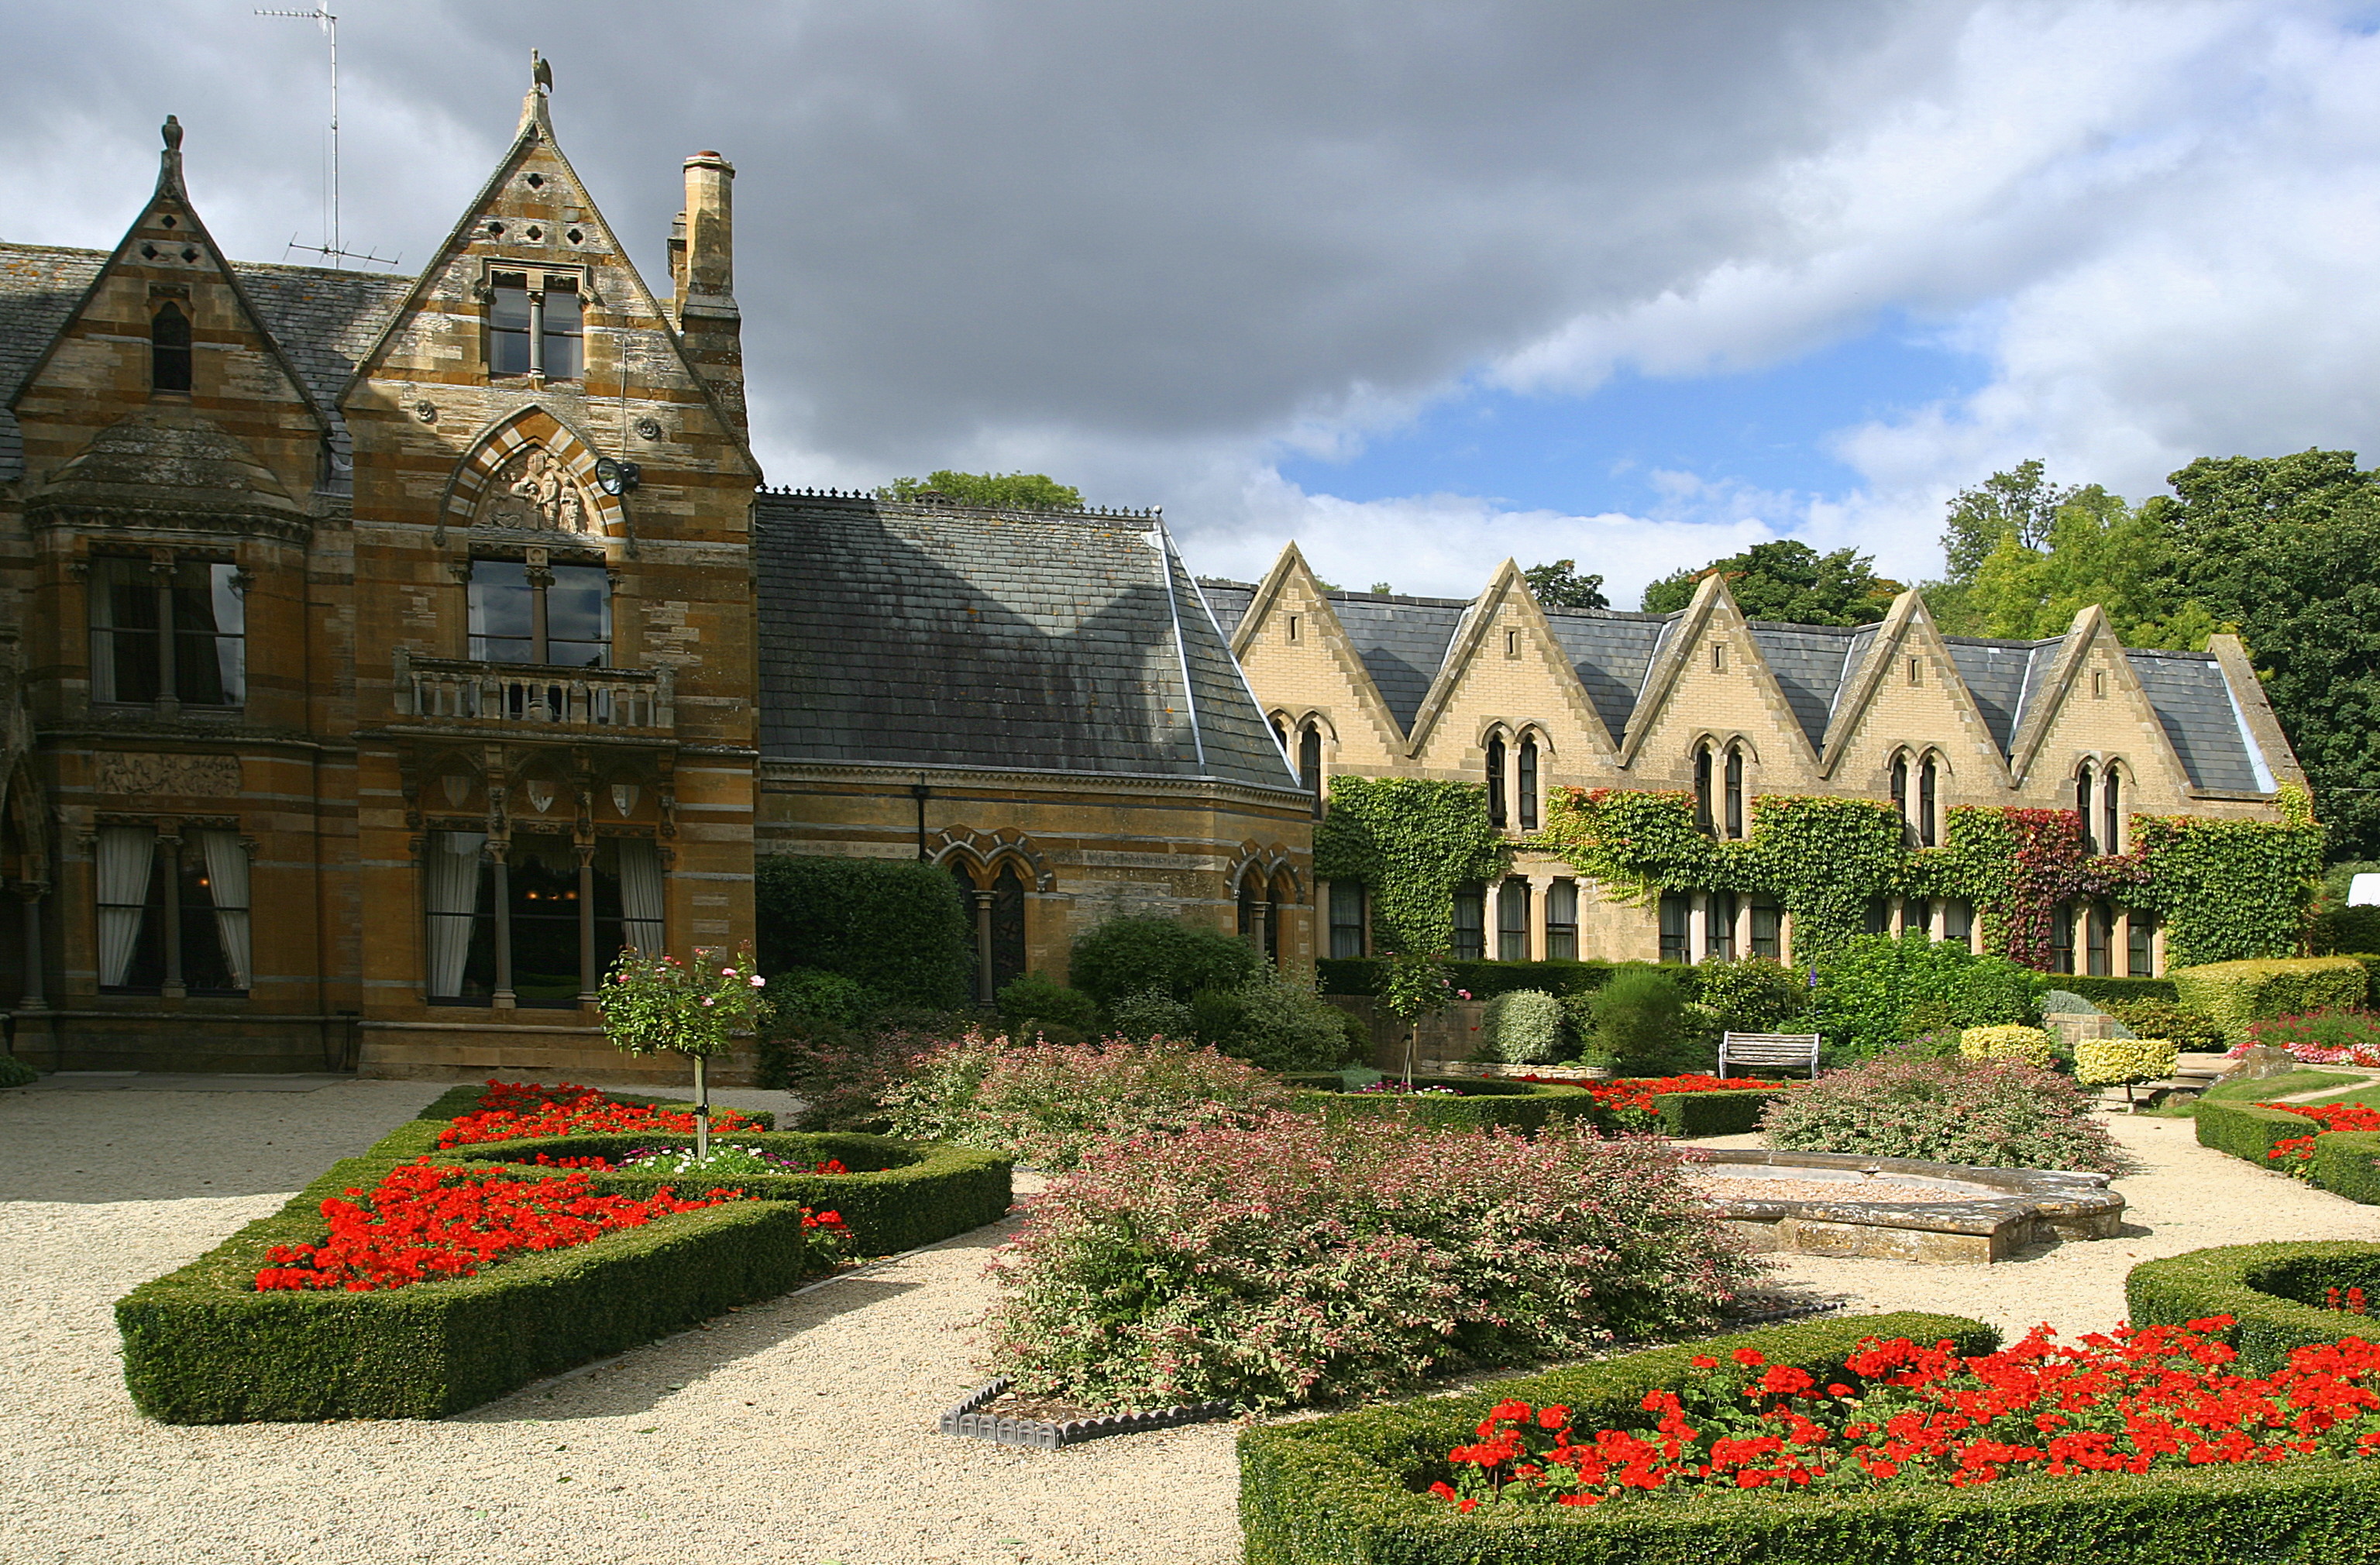 The Ettington Park Hotel Gardens